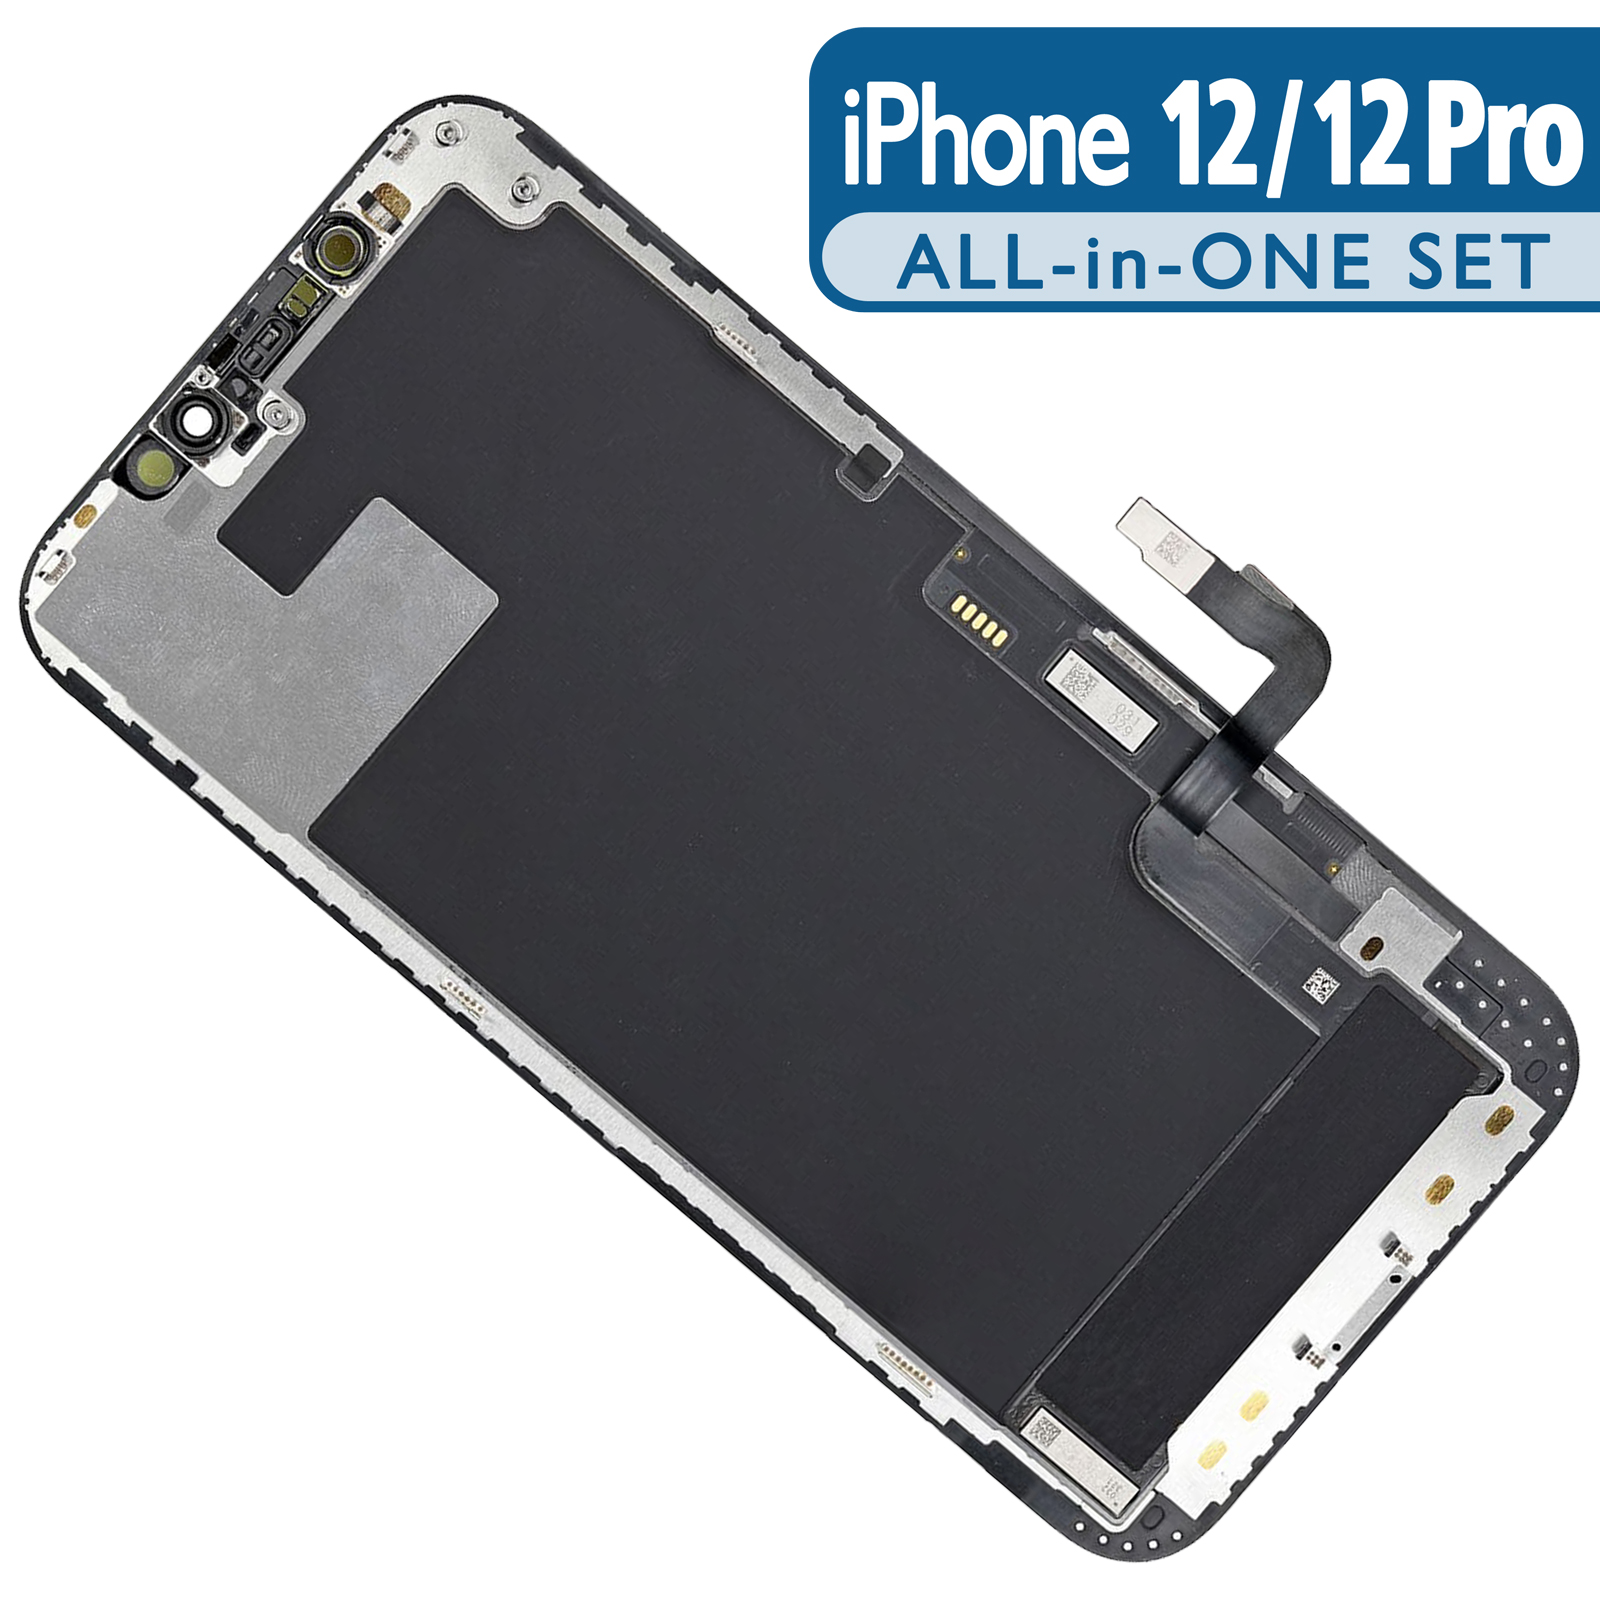 Display für iPhone 12 / iPhone 12 Pro in BASIC-Qualität